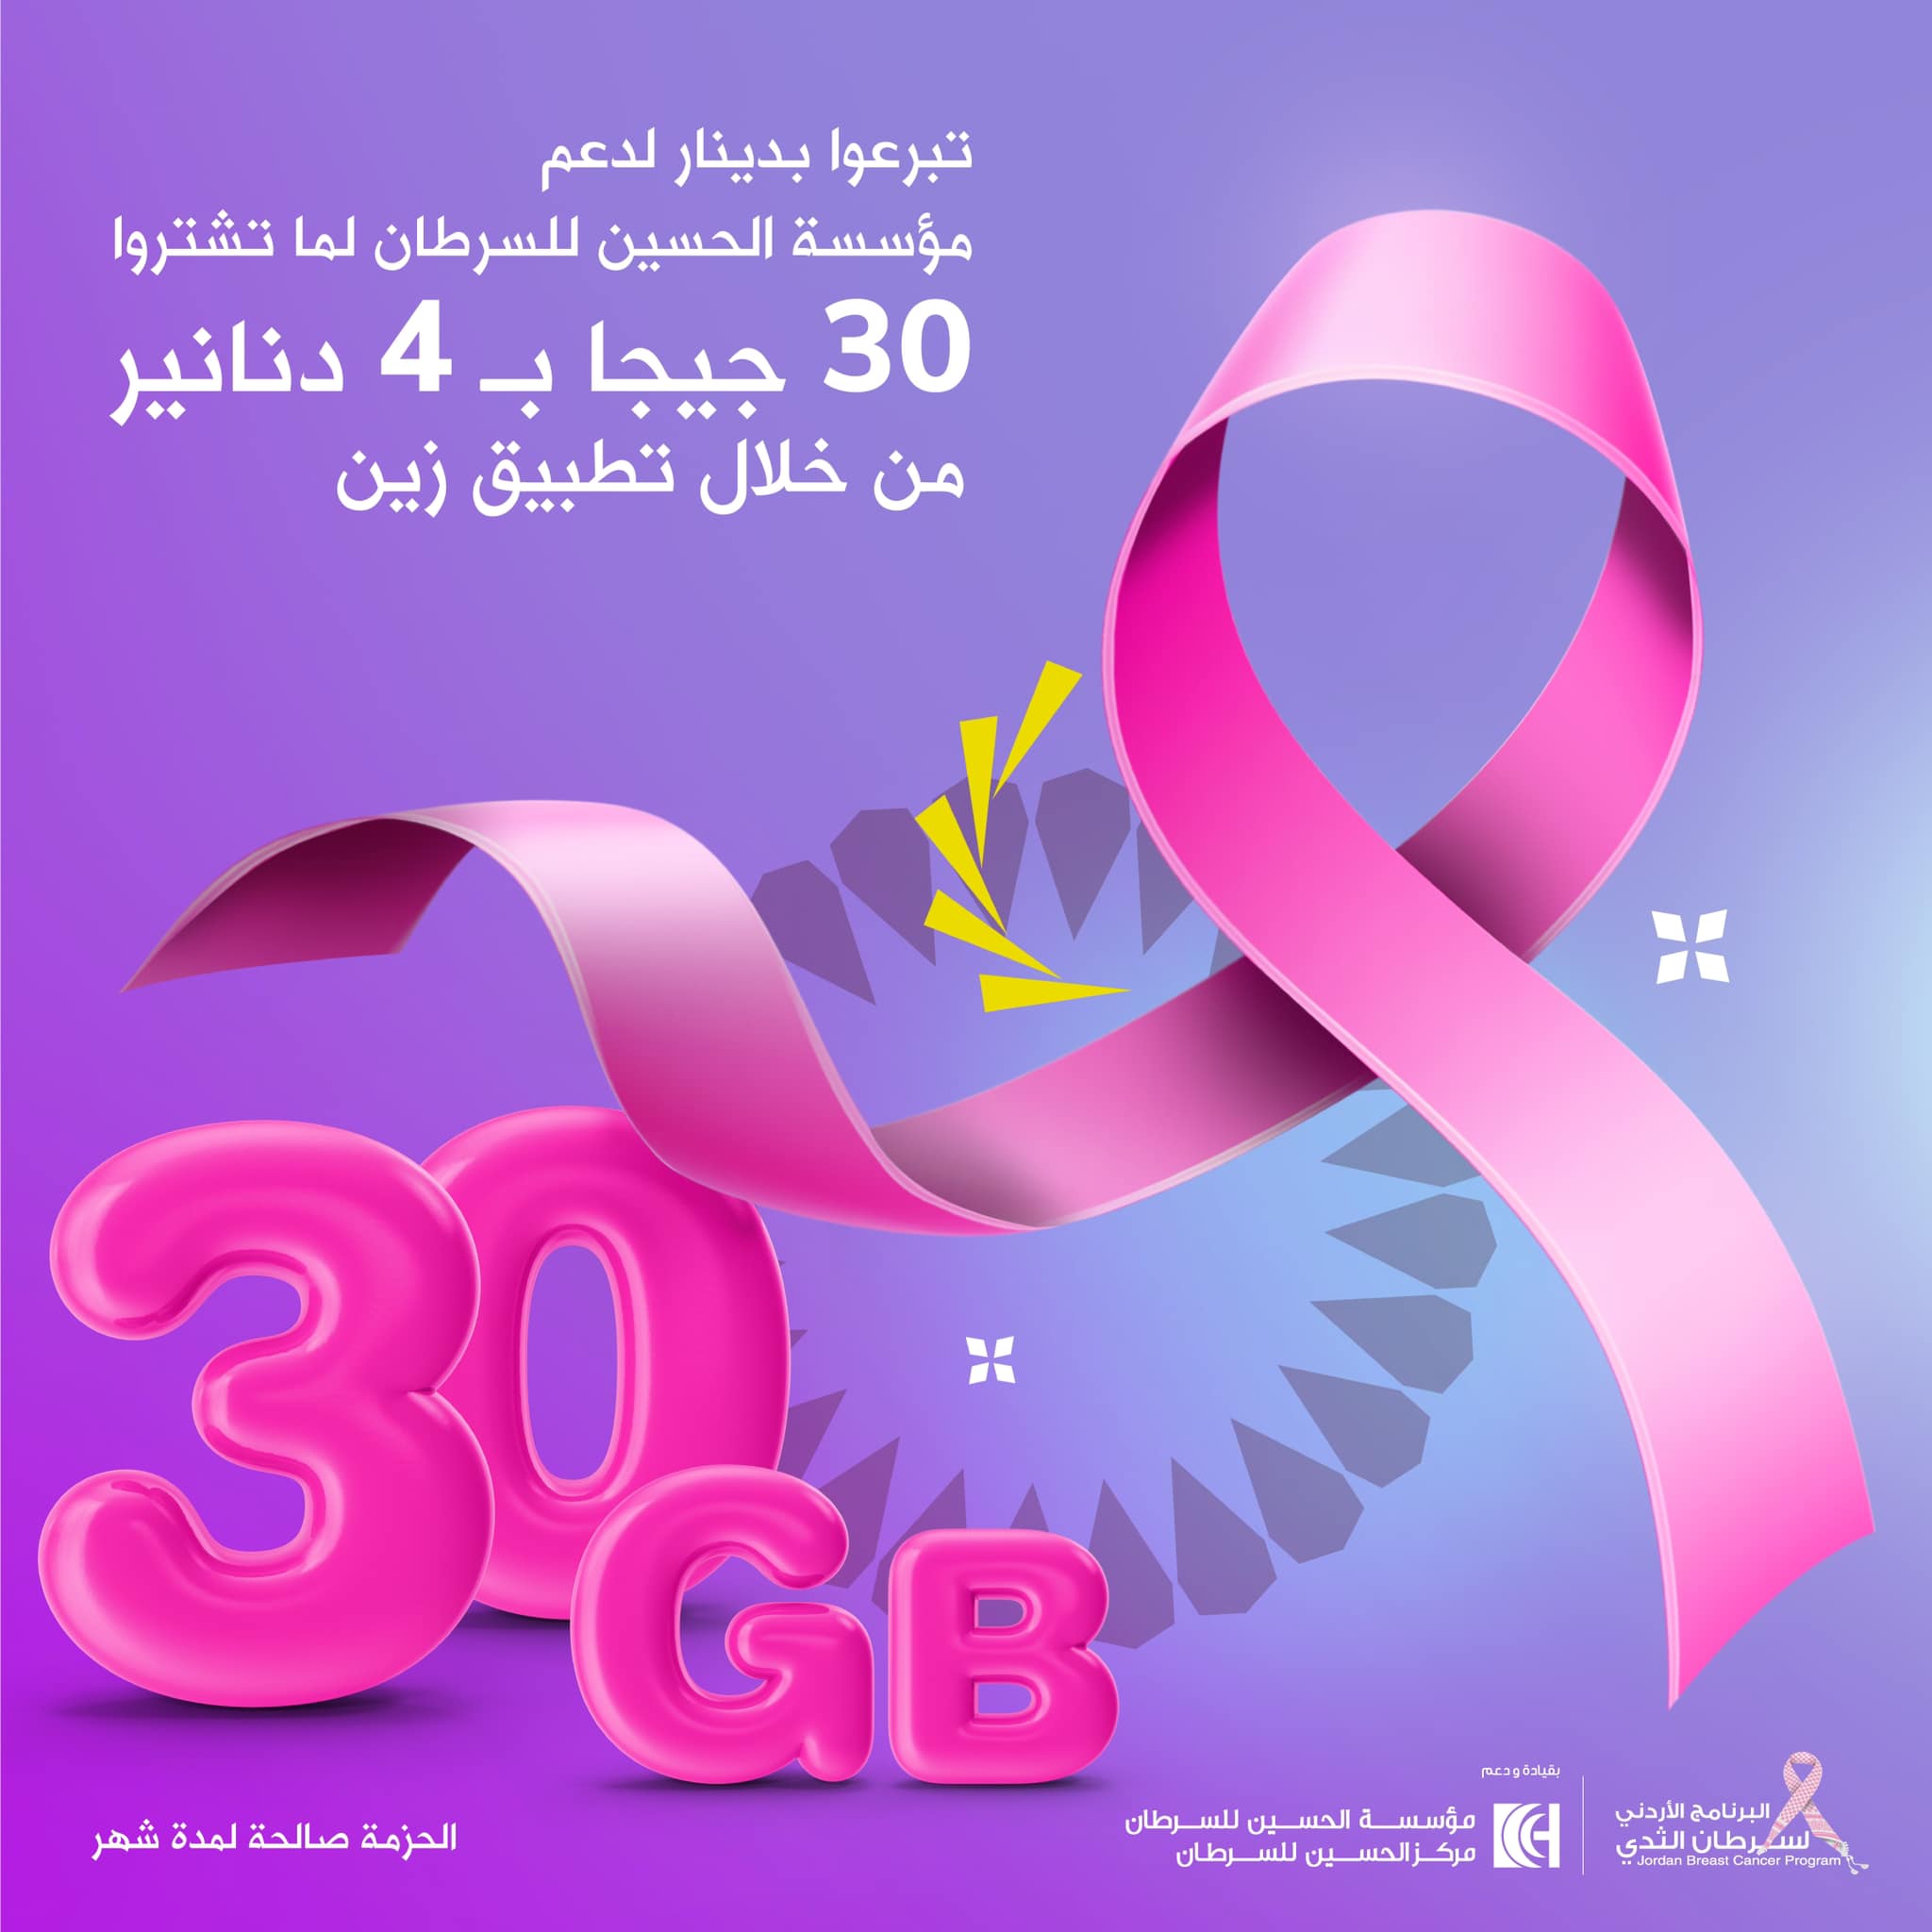 للعام الثاني .. حزمة إنترنت من زين دعماً لمؤسسة الحسين للسرطان بالتزامن مع شهر التوعية بسرطان الثدي 